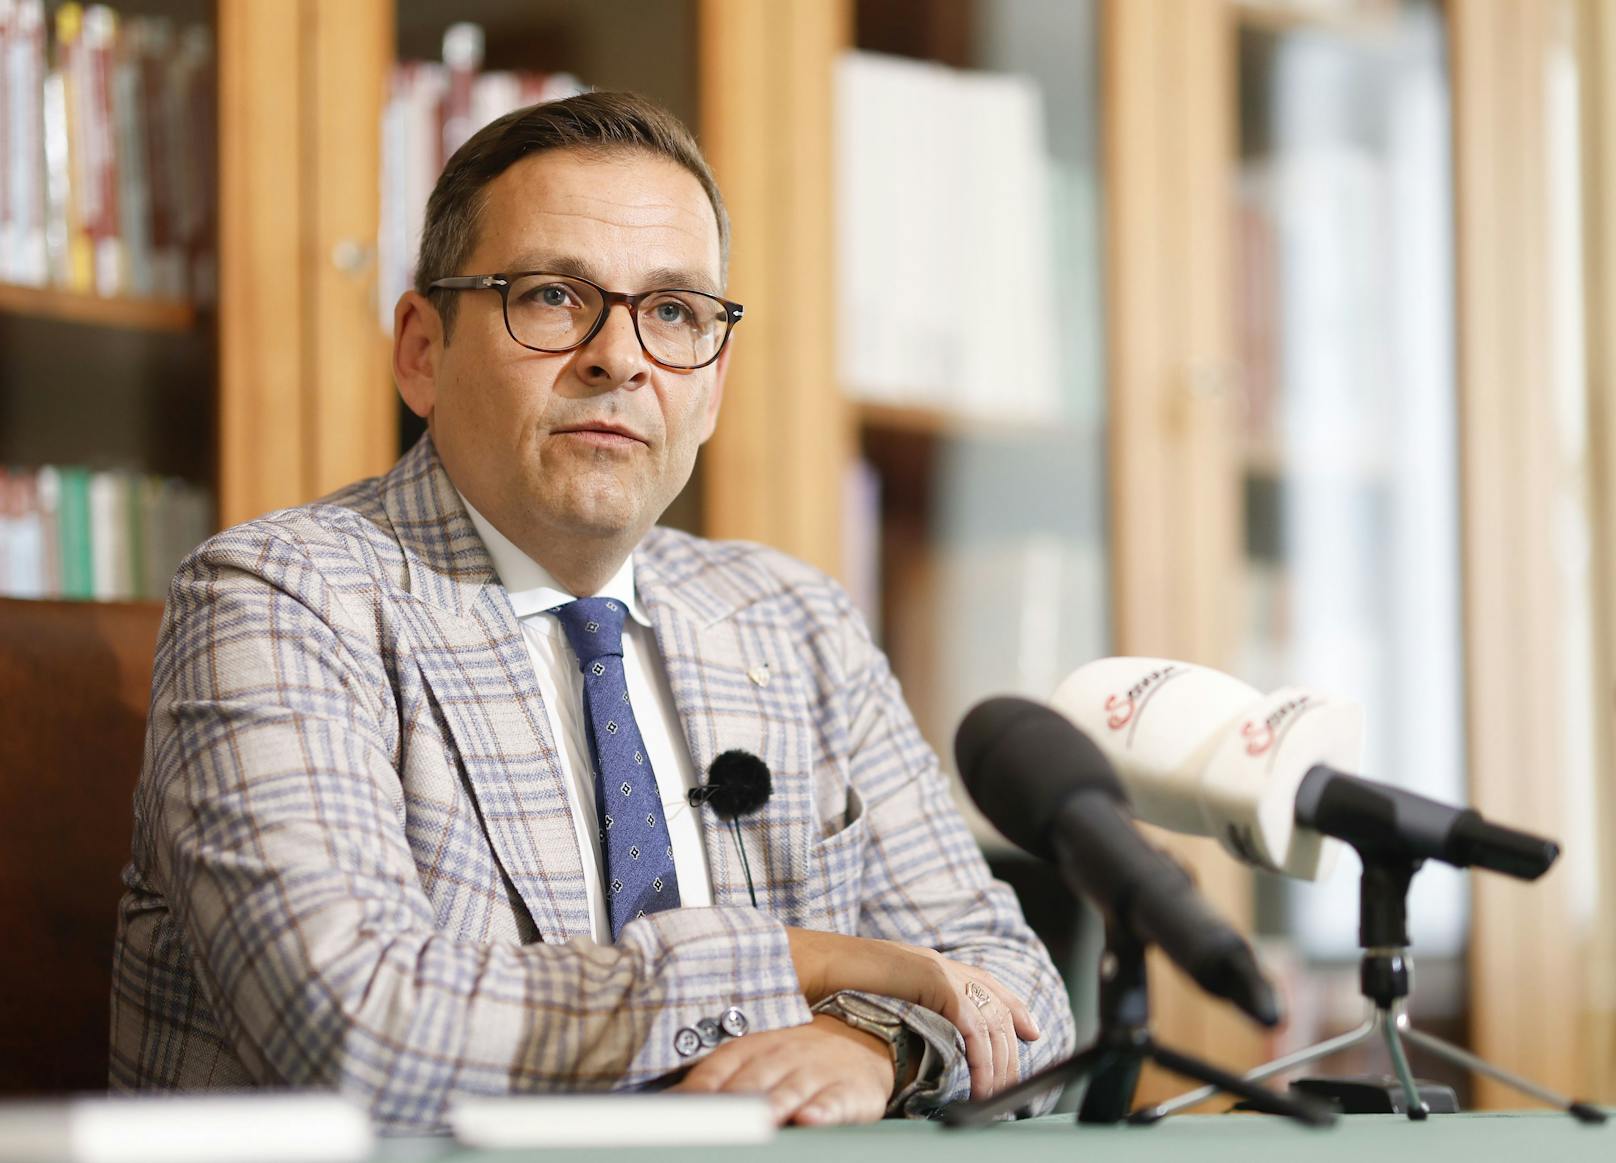 Hofburg-Kandidat bezeichnet Politiker als "Lumpen"